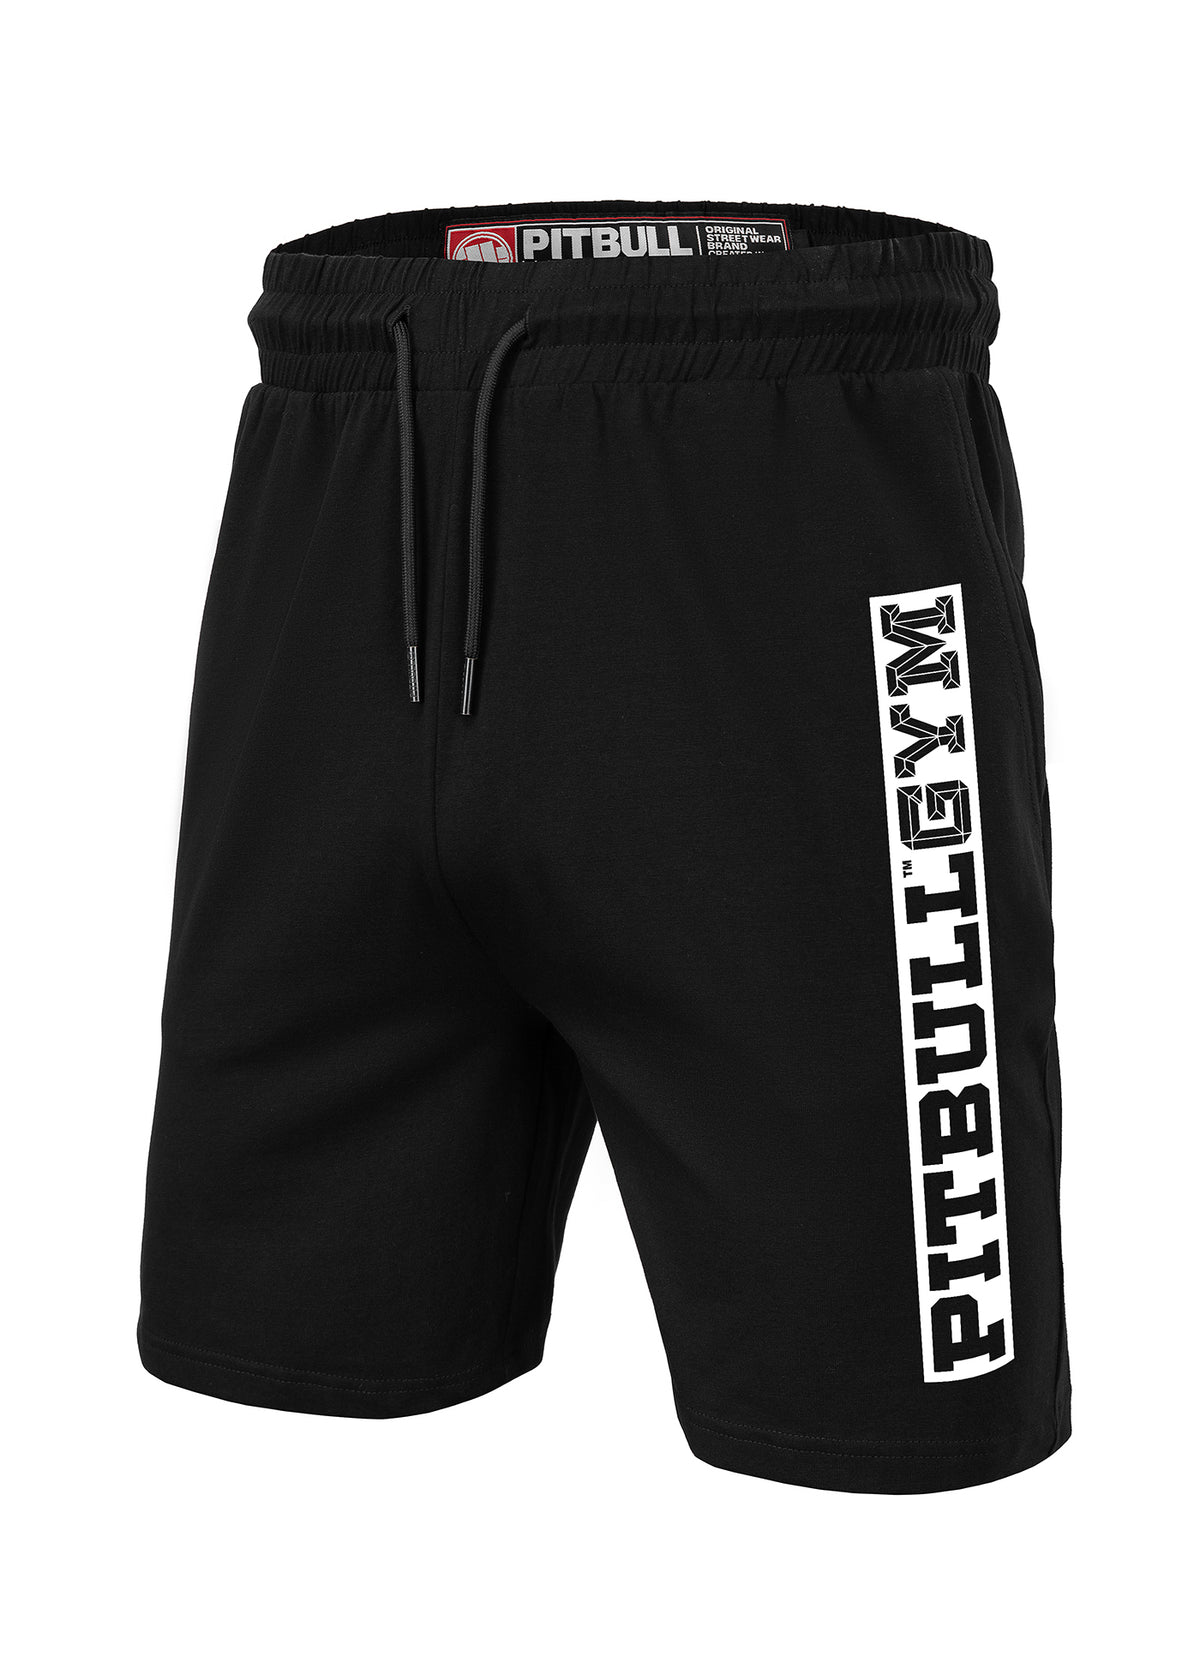 Pitbull Gym Black Shorts